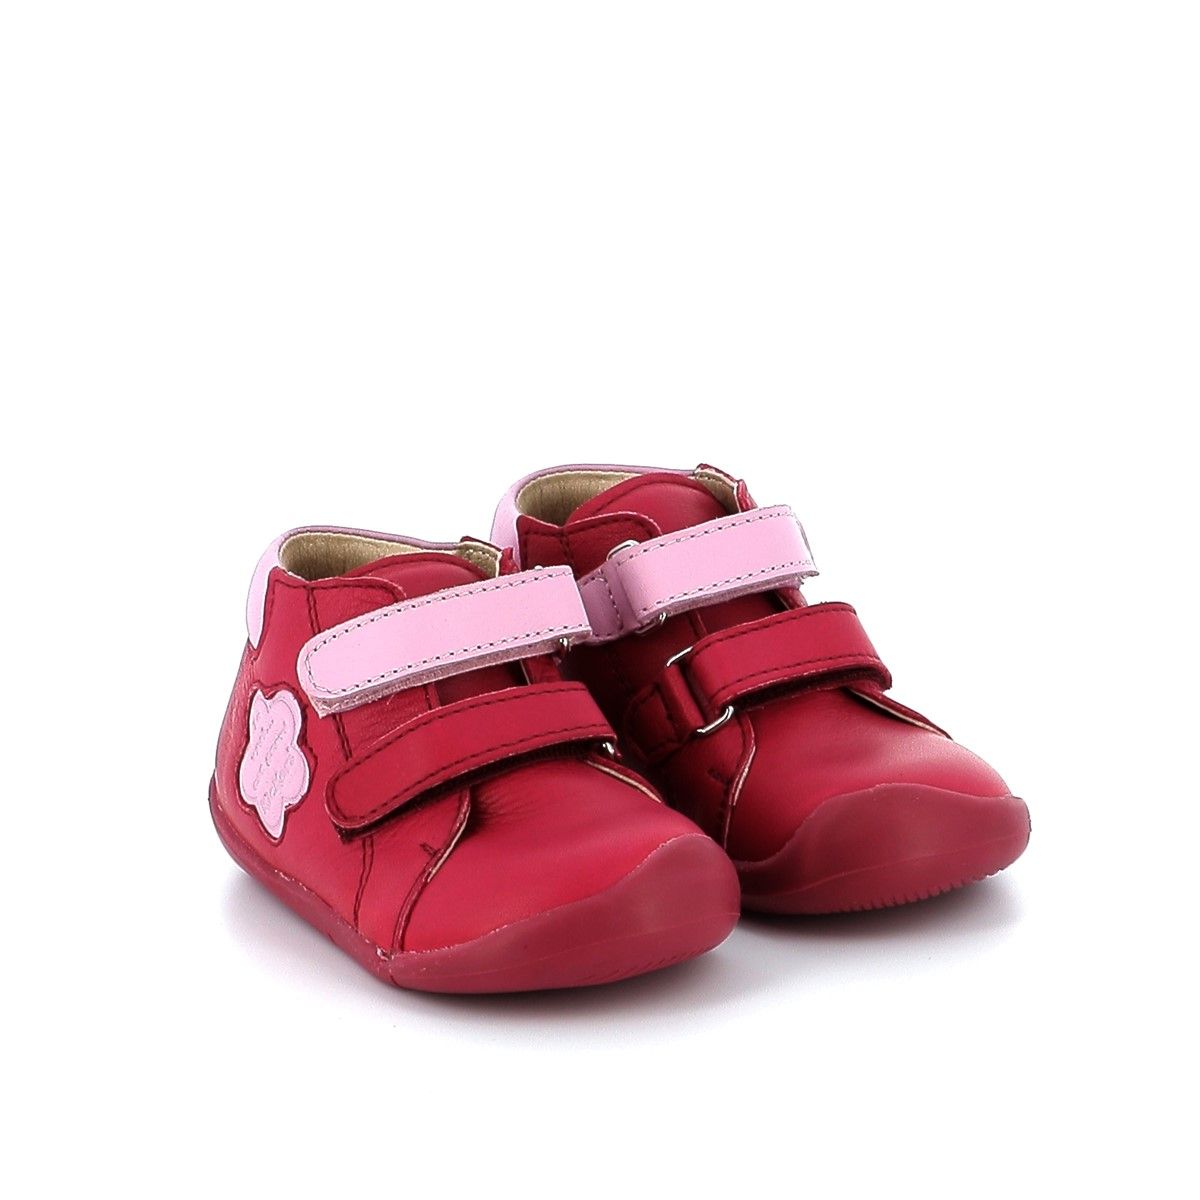 Παιδικό Μποτάκι για Κορίτσι Ανατομικό Kickers Wakalla Δερμάτινο Χρώματος Ροζ 878480-10-131